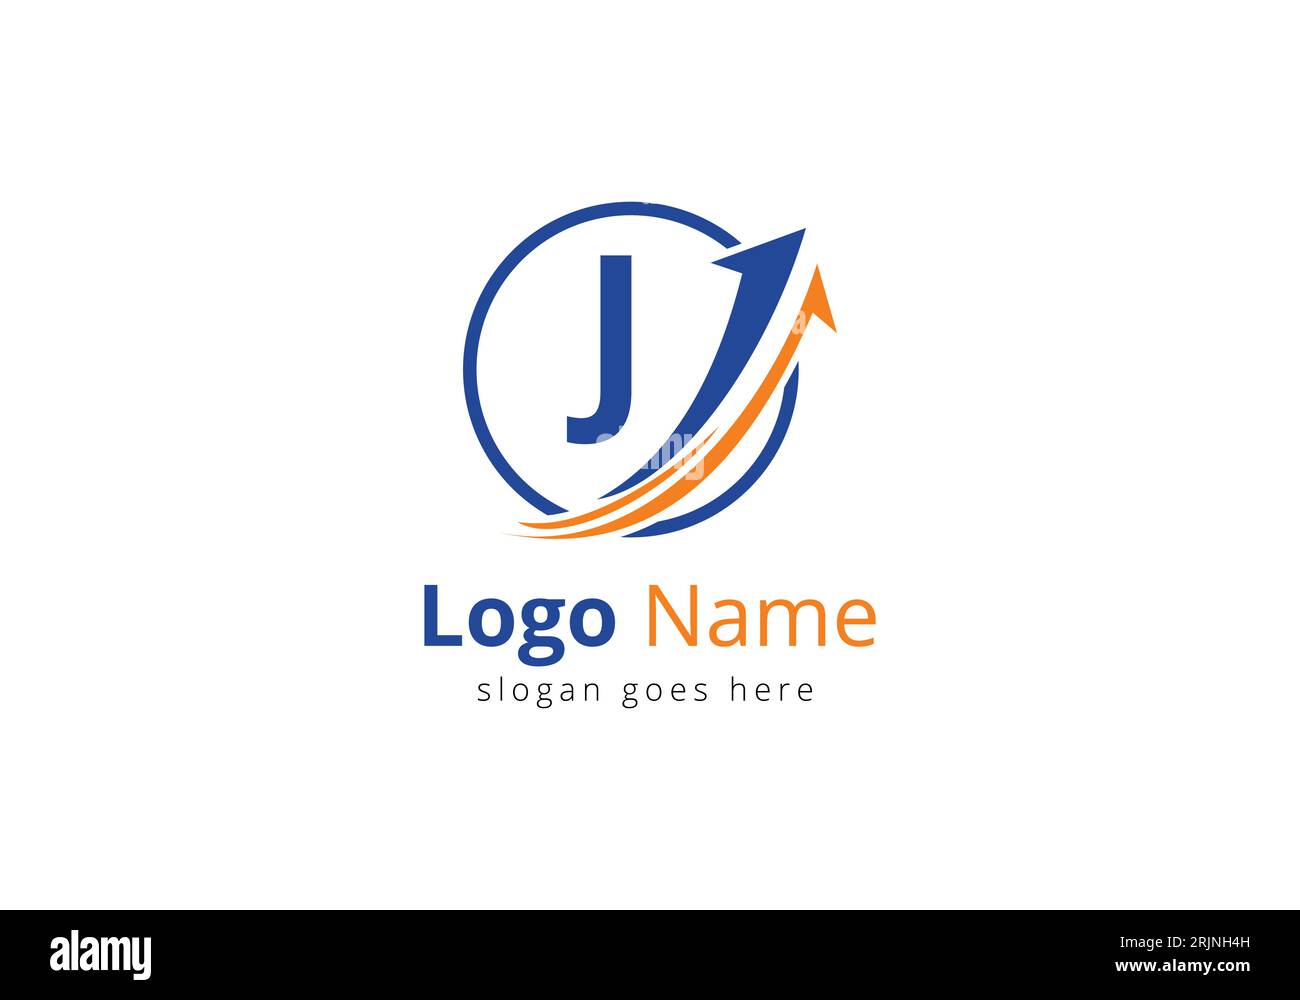 Logo de financement avec concept de lettre J. Concept de logo financier ou de réussite. Logo pour l'entreprise comptable et l'identité de l'entreprise Illustration de Vecteur